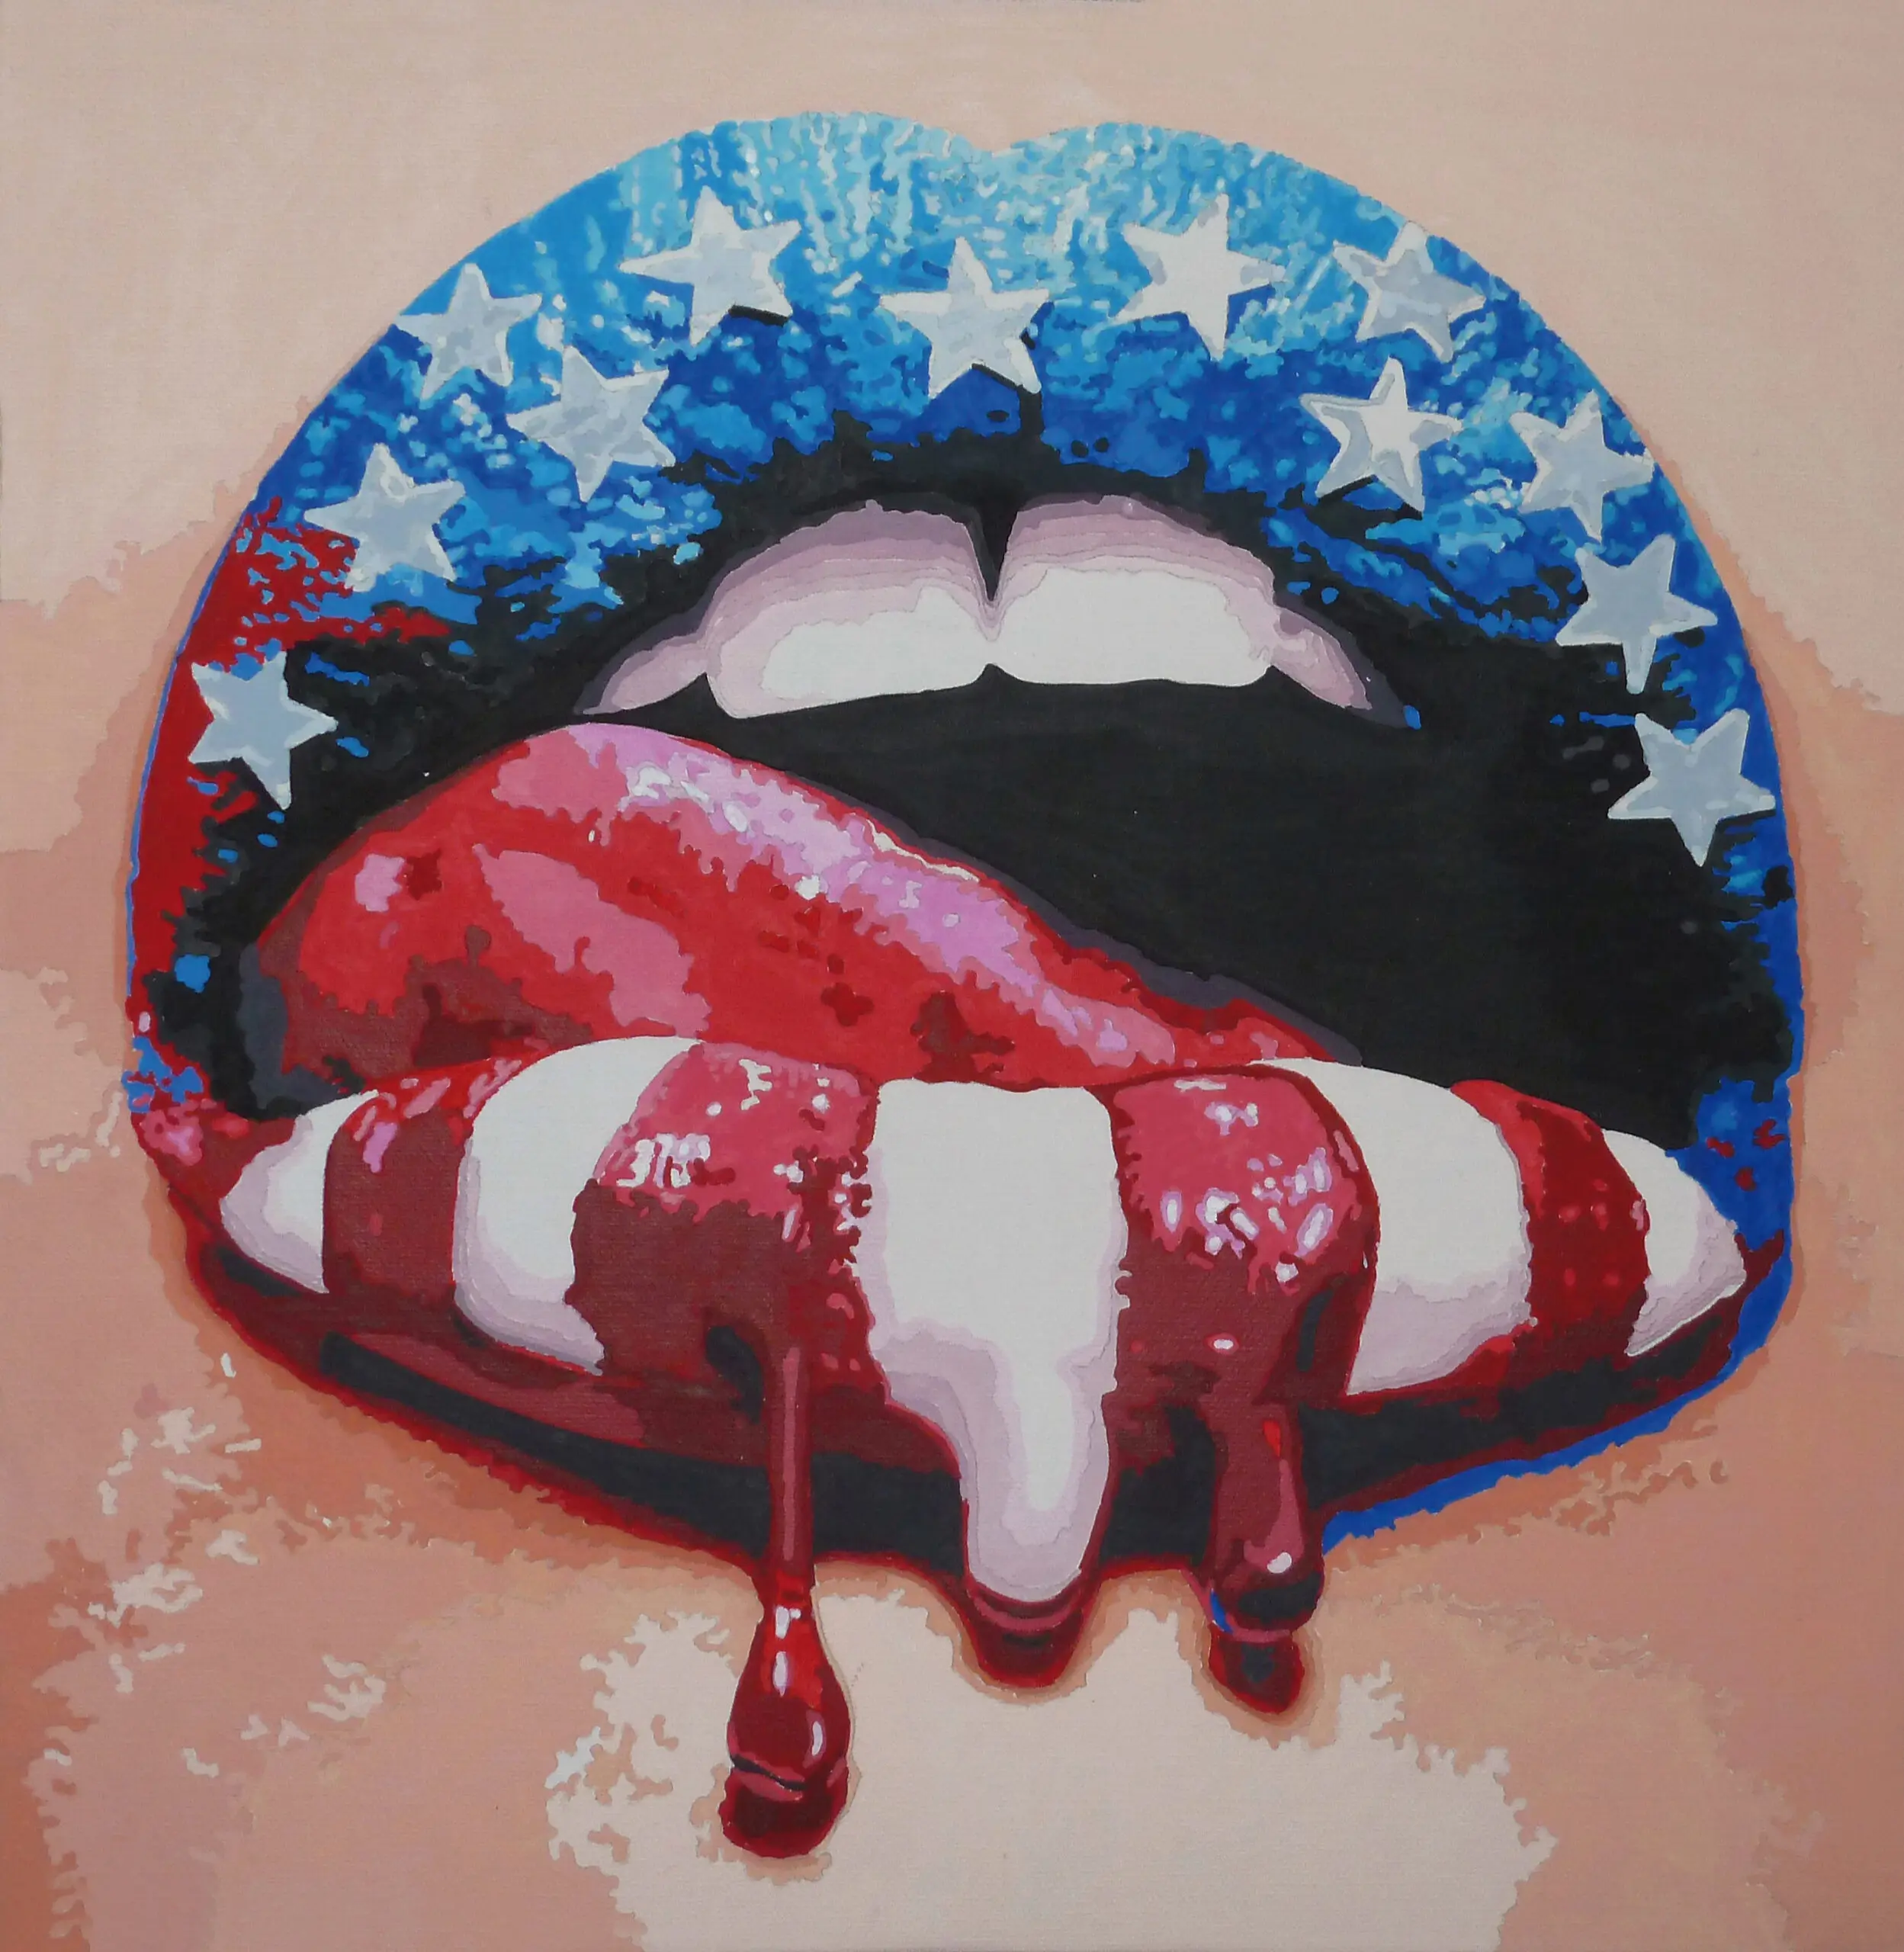 Wandbild (5777) Liberty Lips präsentiert: Menschen,Kreatives,Frauen